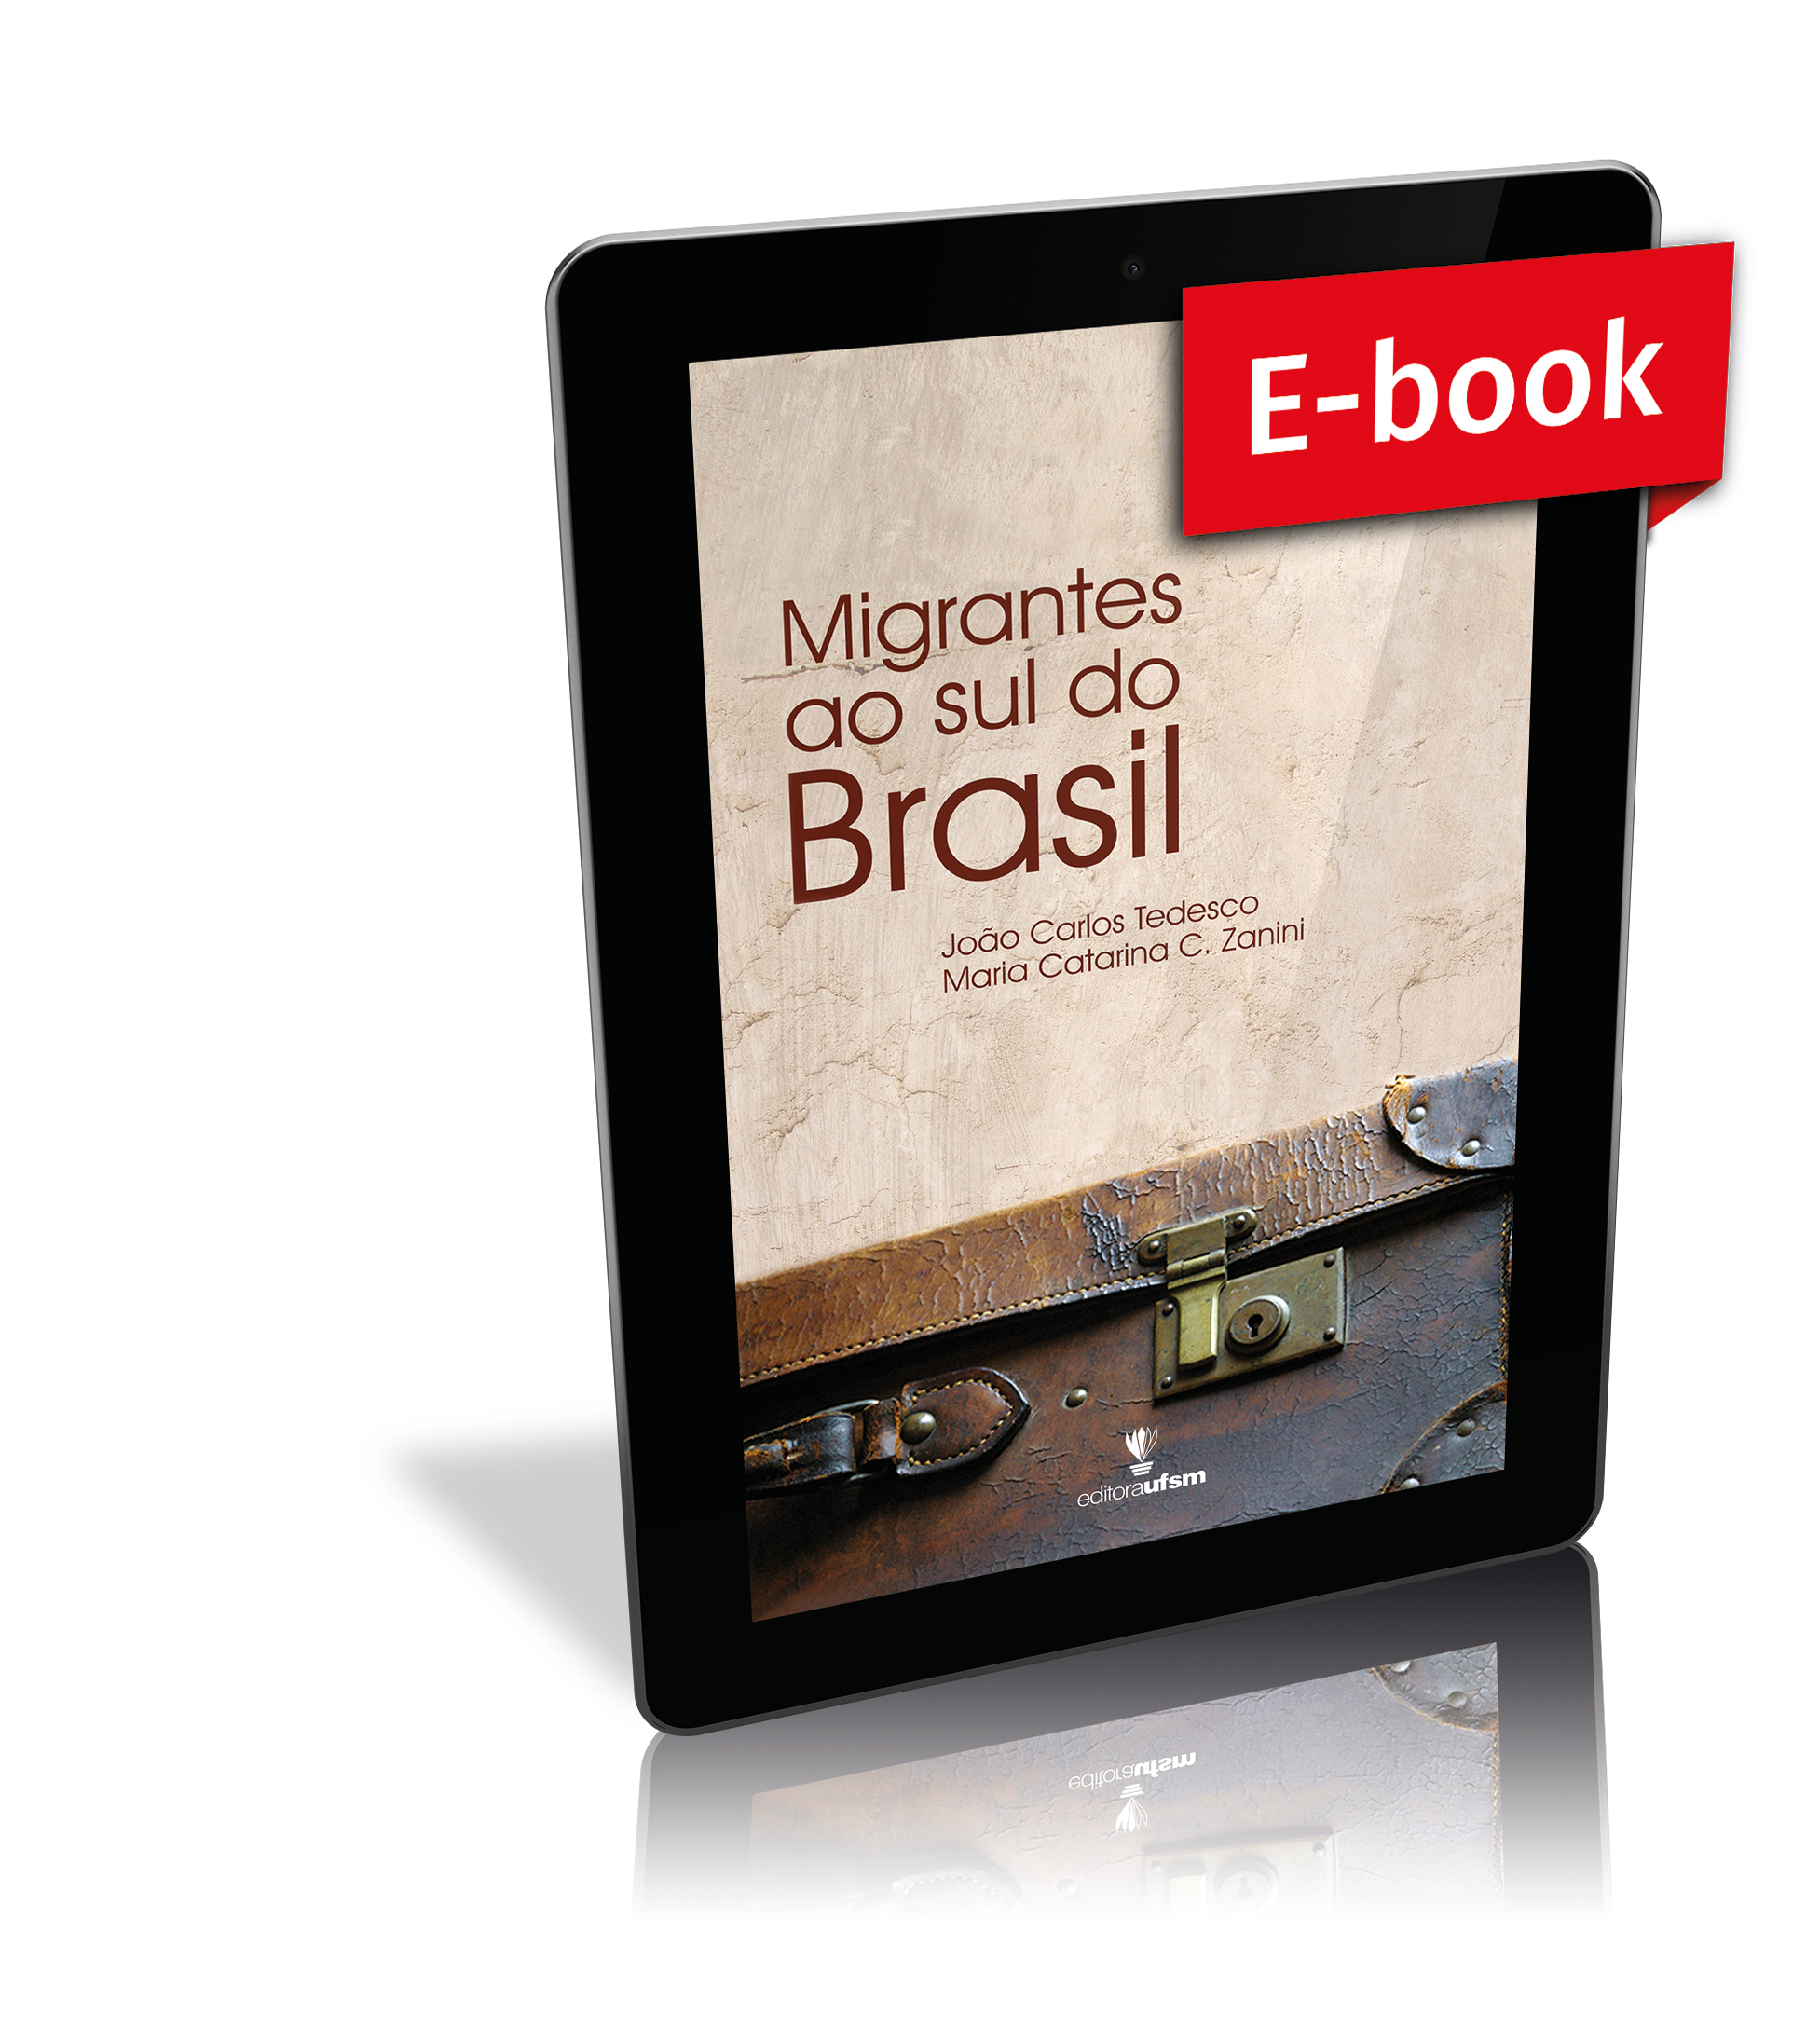 Capa do e-book Migrantes ao sul do Brasil